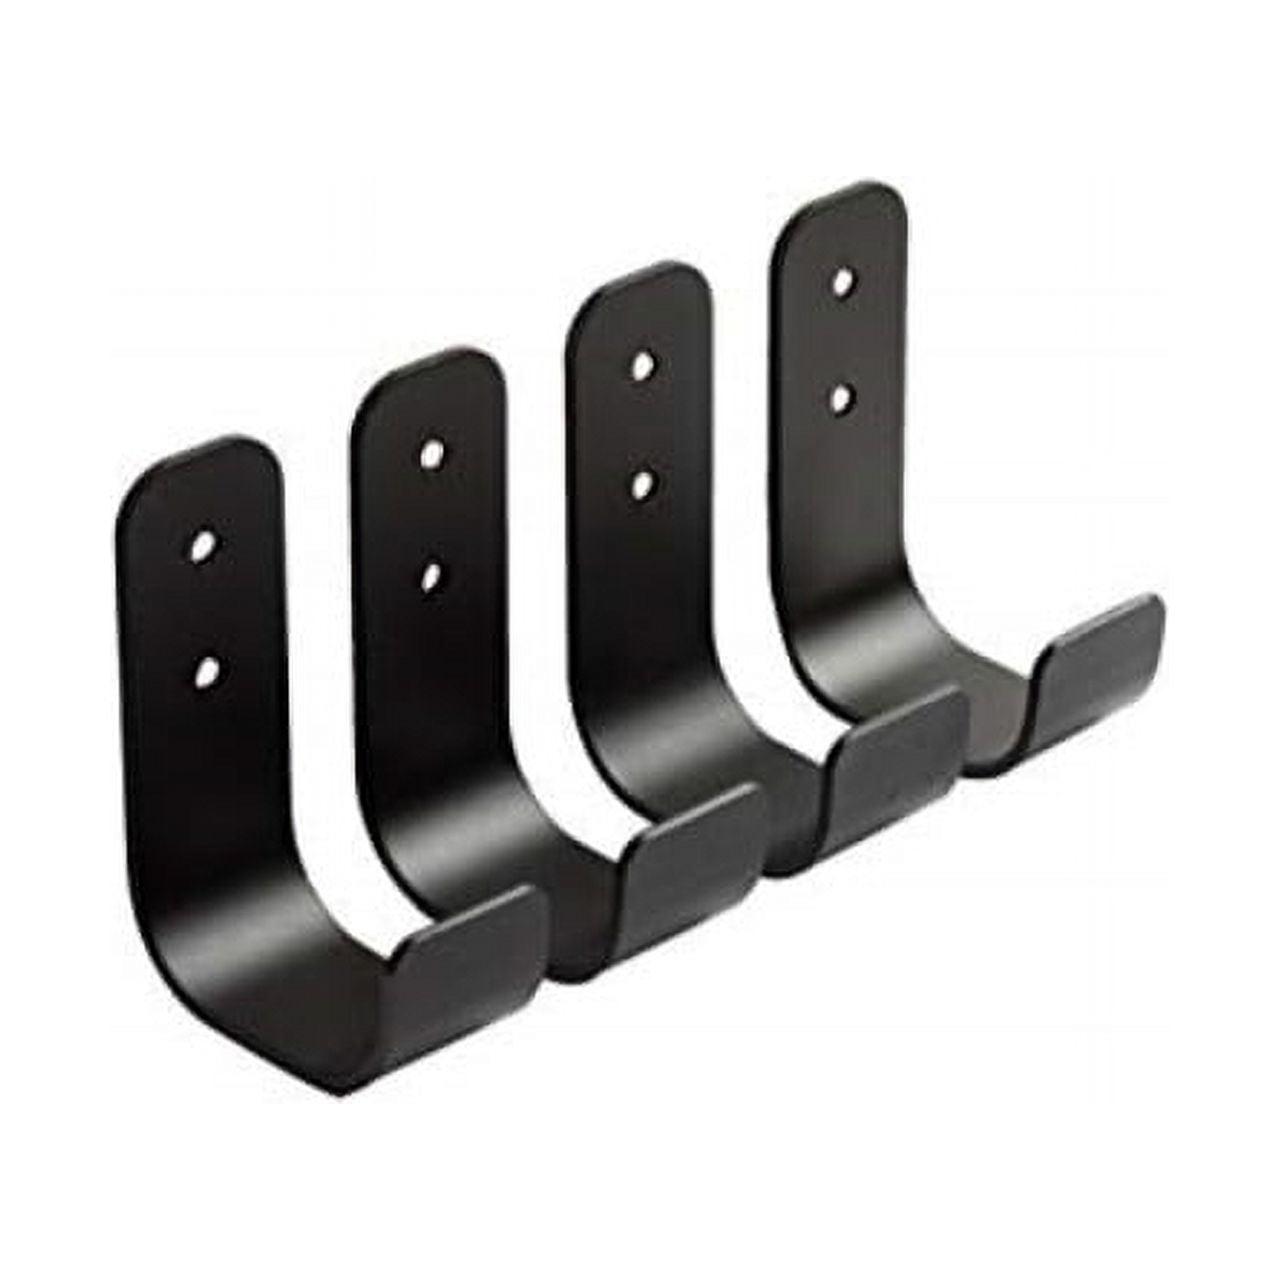 utility j hooks (4 pack) heavy duty solid metal, wall mount - best